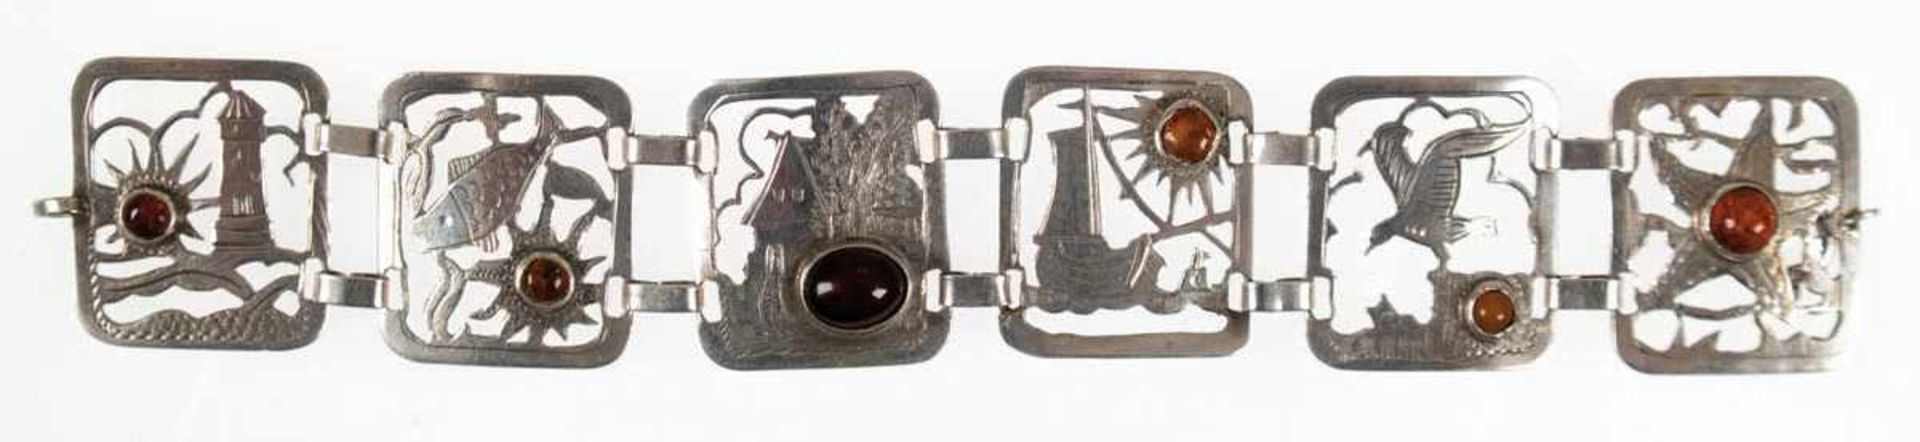 Armband, um 1930, Kramer, Fischland, 835er Silber, durchbrochene Glieder mitunterschiedlichen